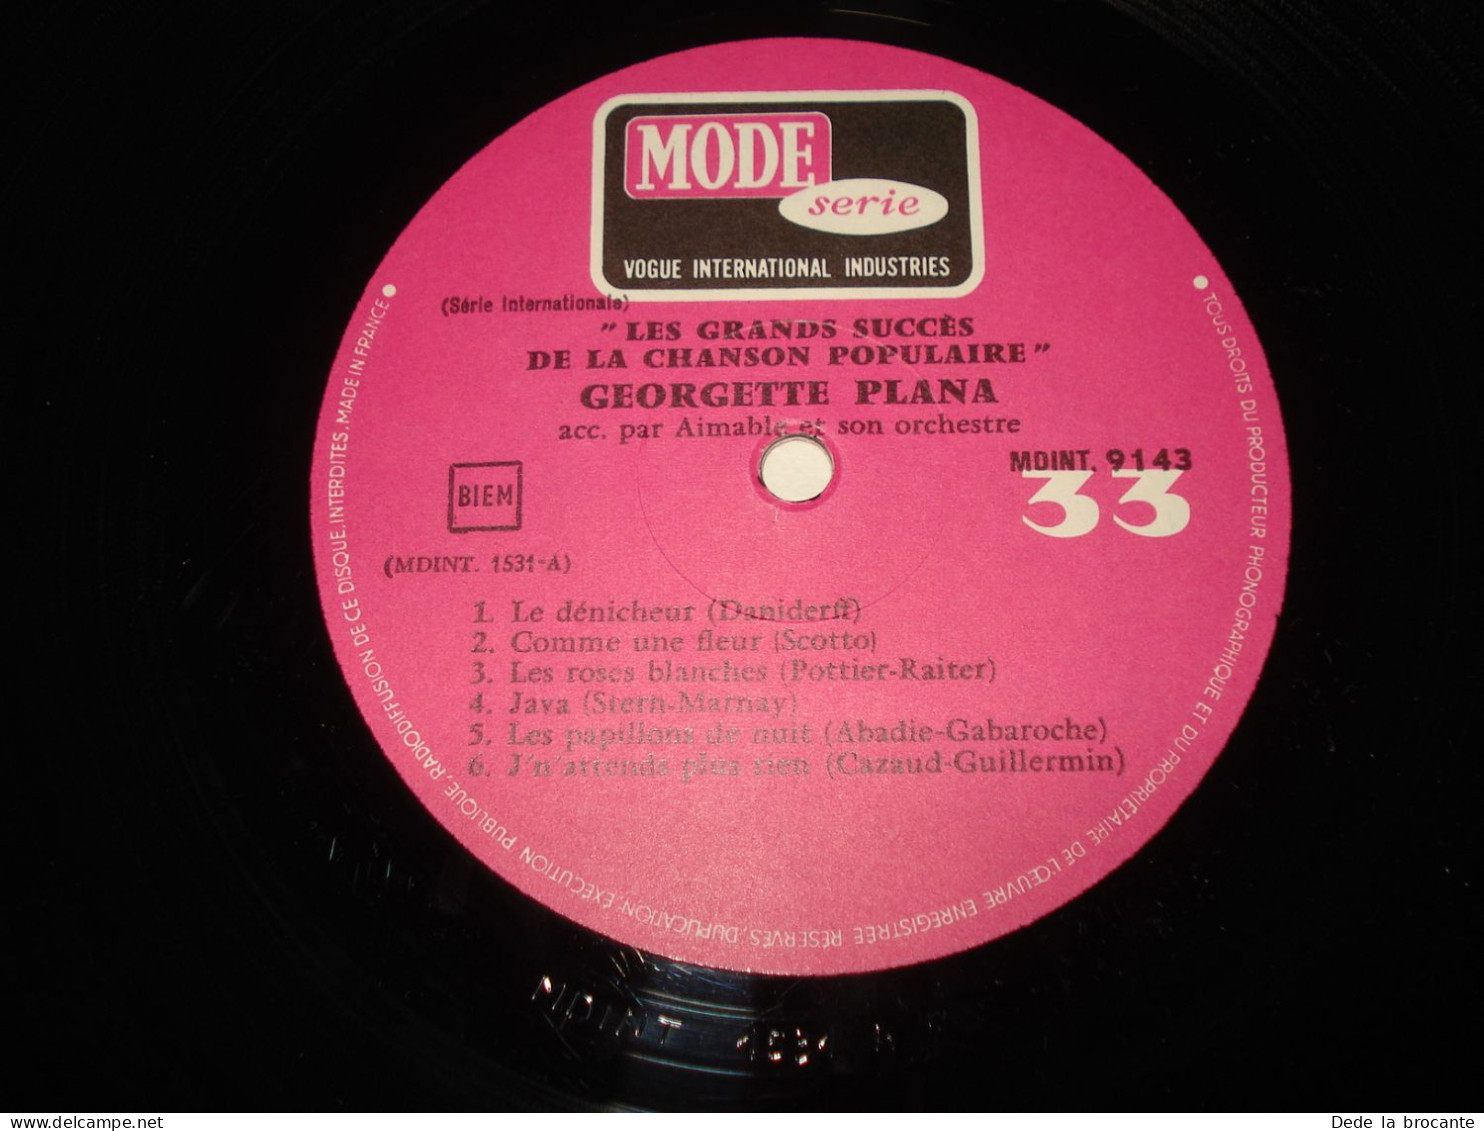 B14 / Georgette Plana et Aimable orchestre  – LP - MDINT 9143 - Fr  1968  NM/EX